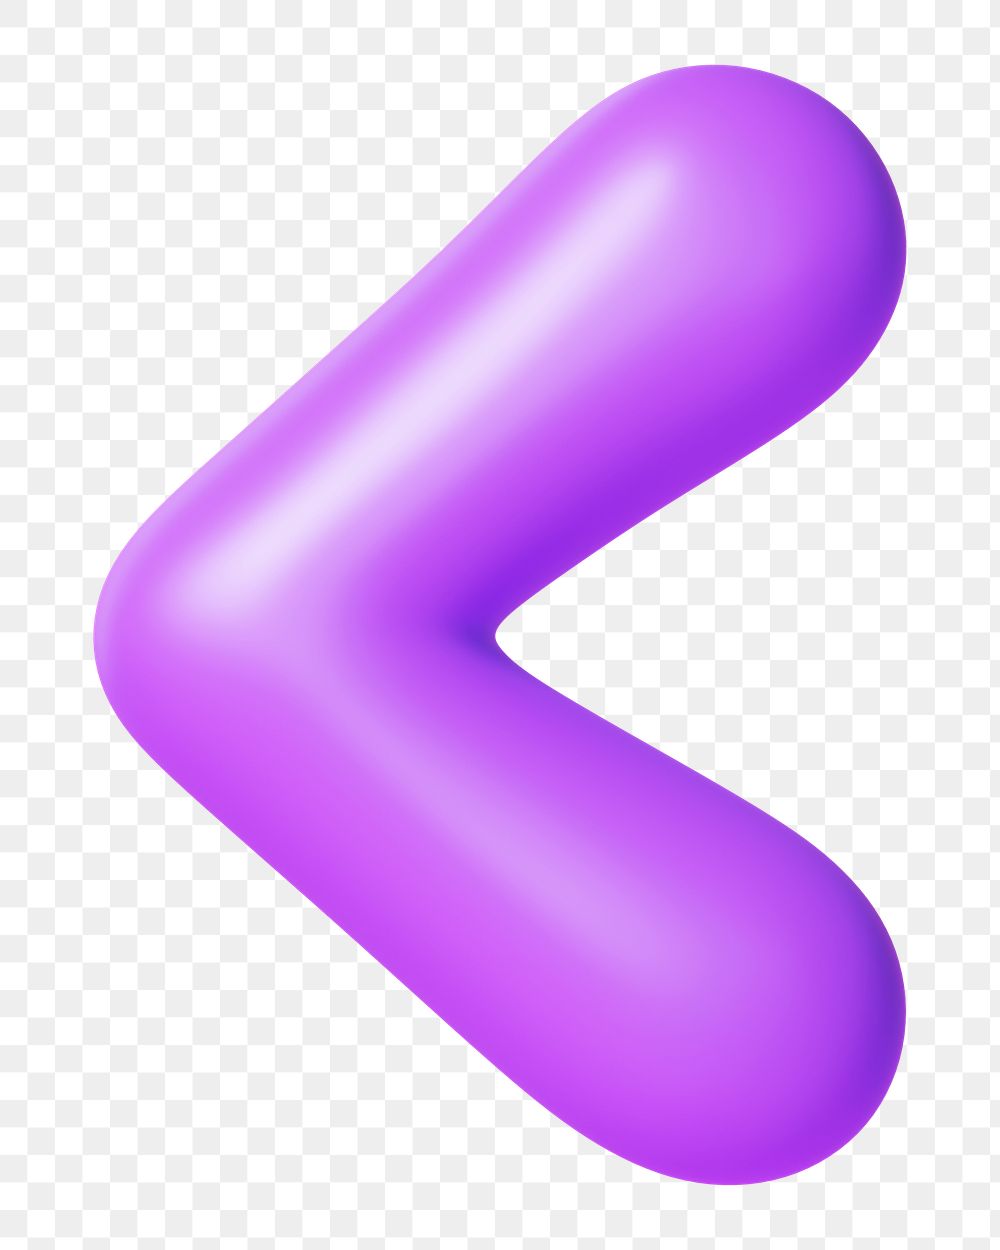 Less than png 3D purple symbol, transparent background